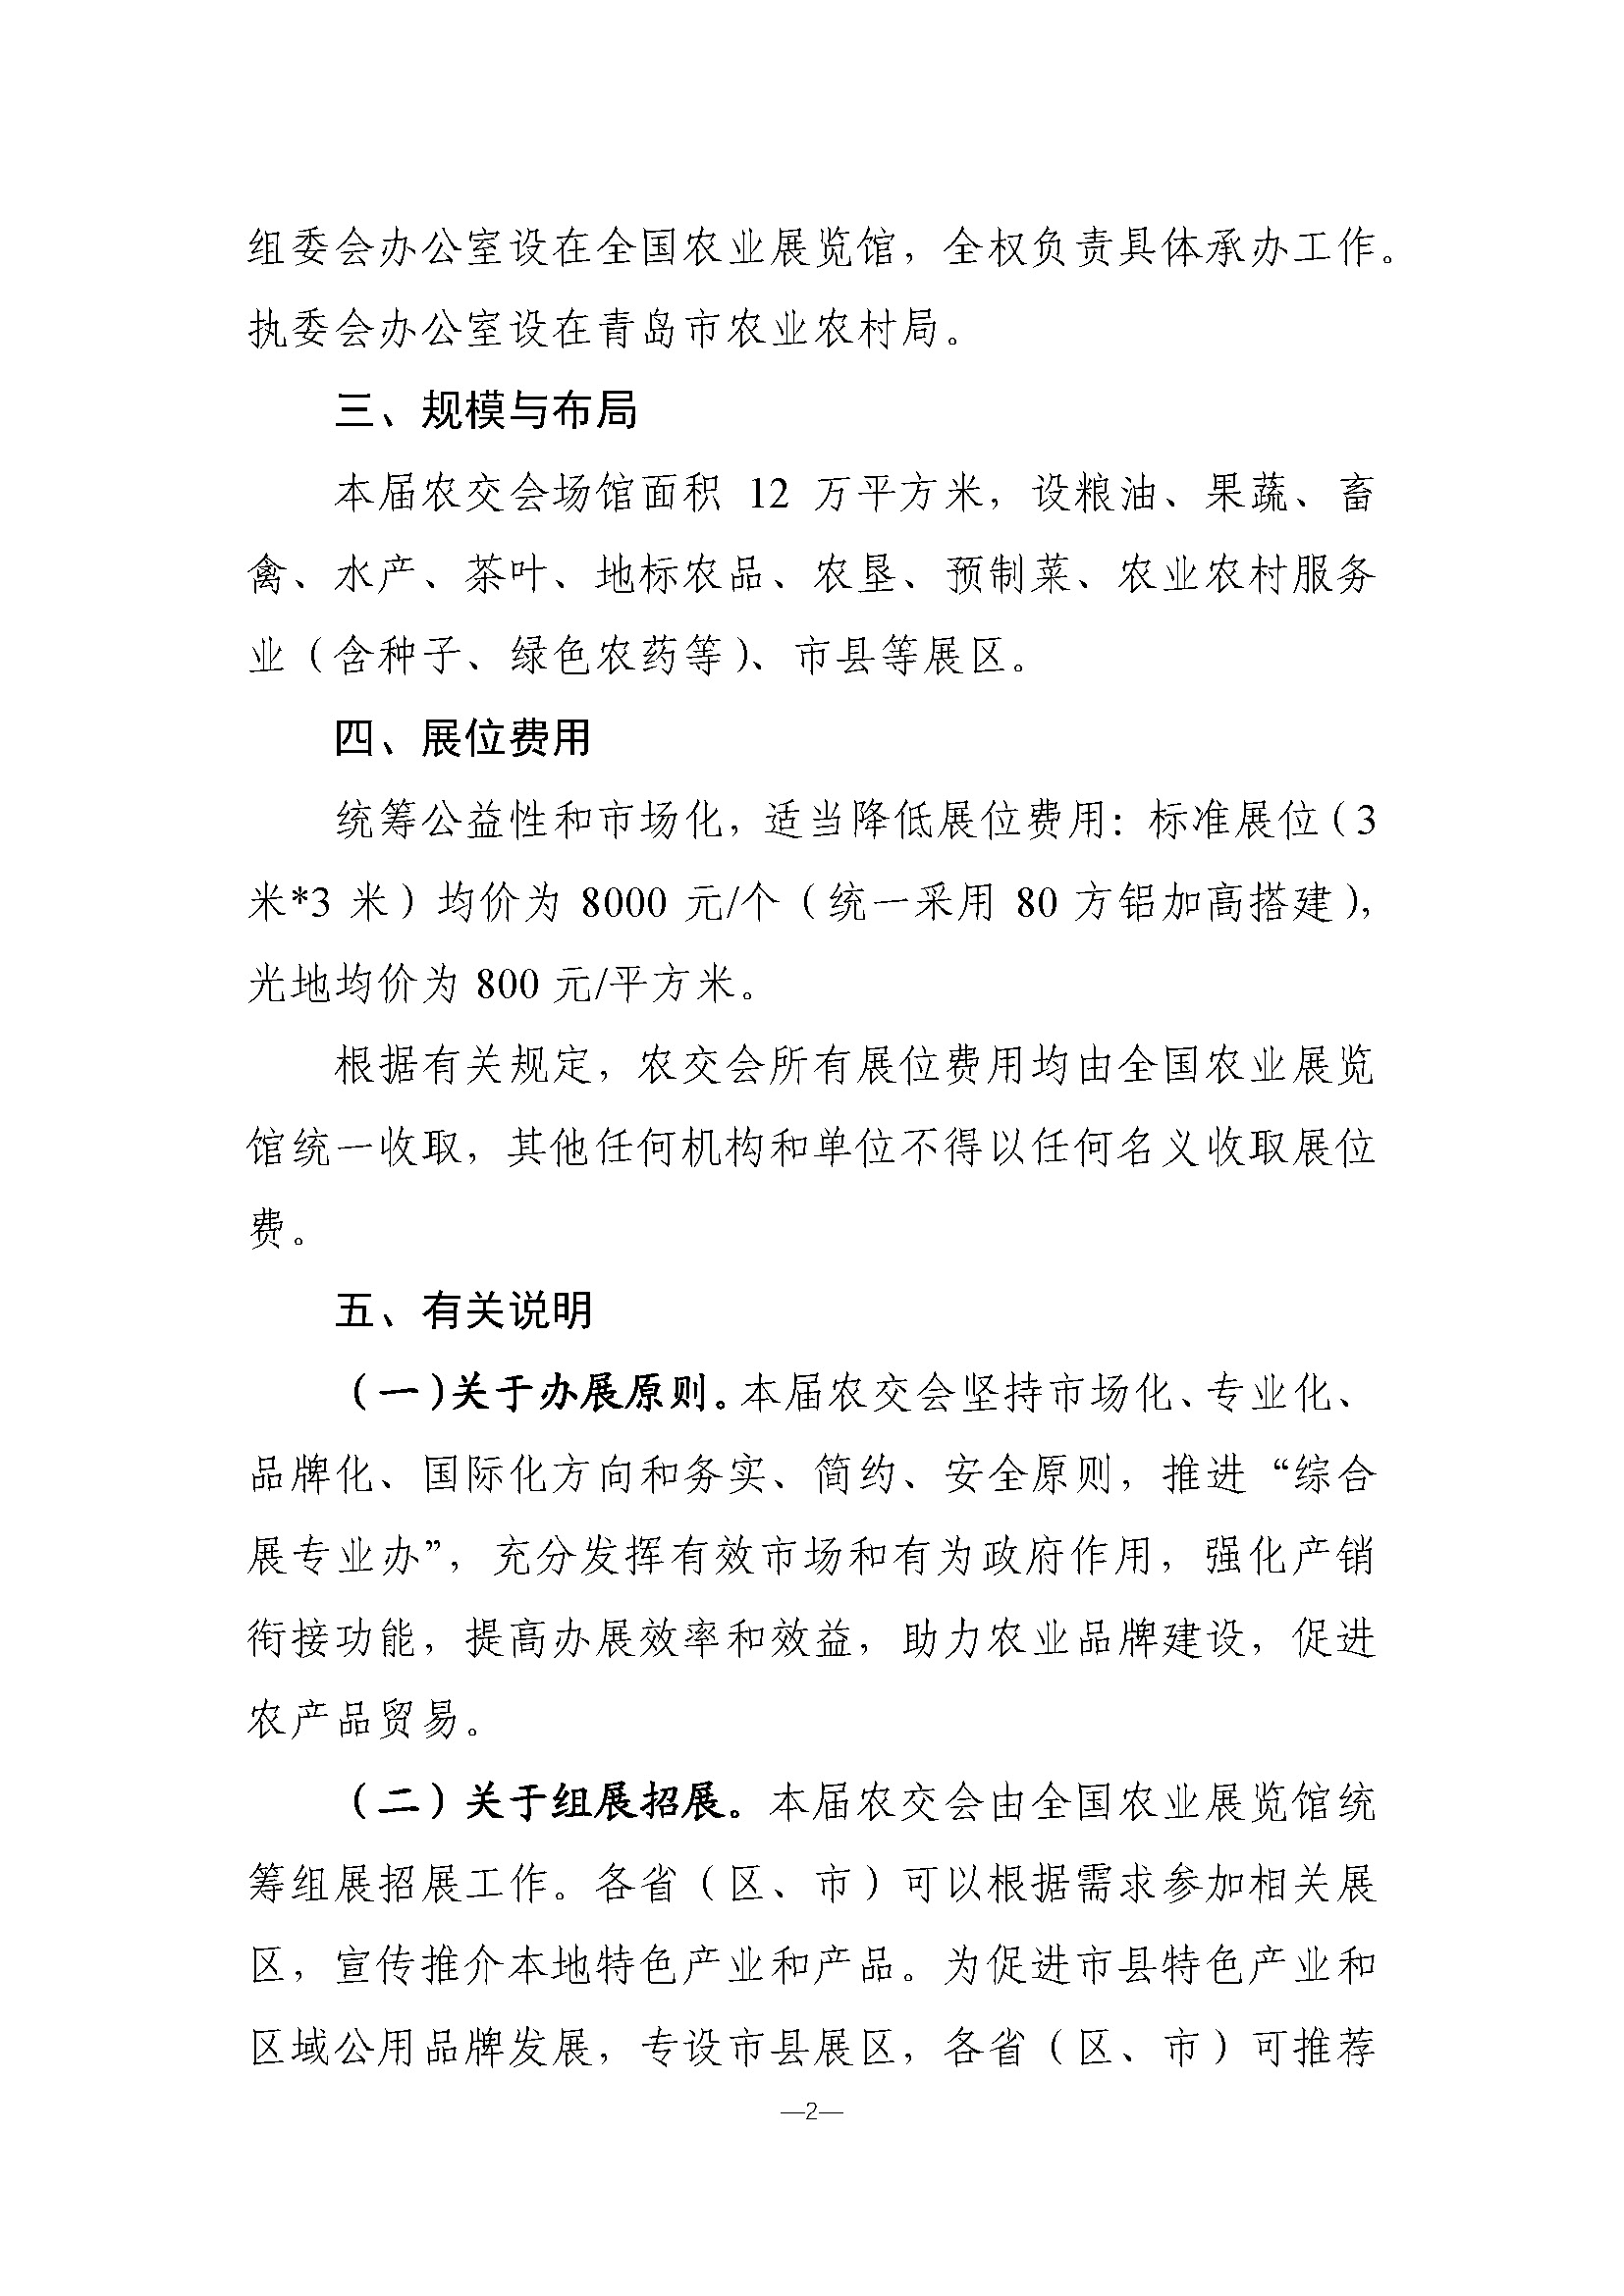 关于举办第二十届中国国际农产品交易会的预通知(3)_页面_2.jpg